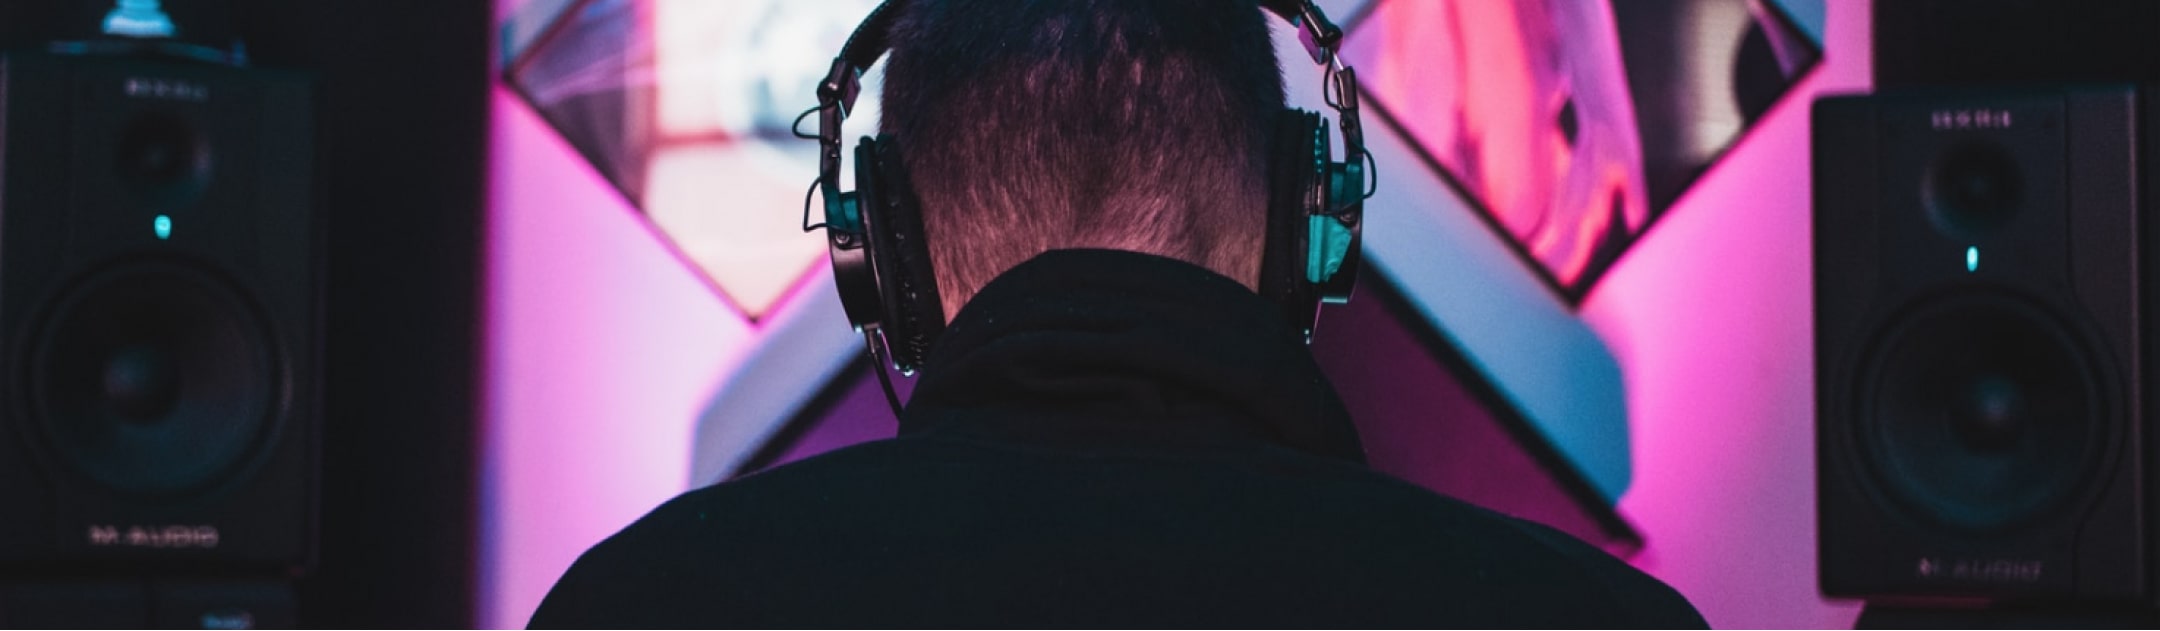 MusicHub DJ sitzt an seinem Arbeitsplatz mit Kopfhörern